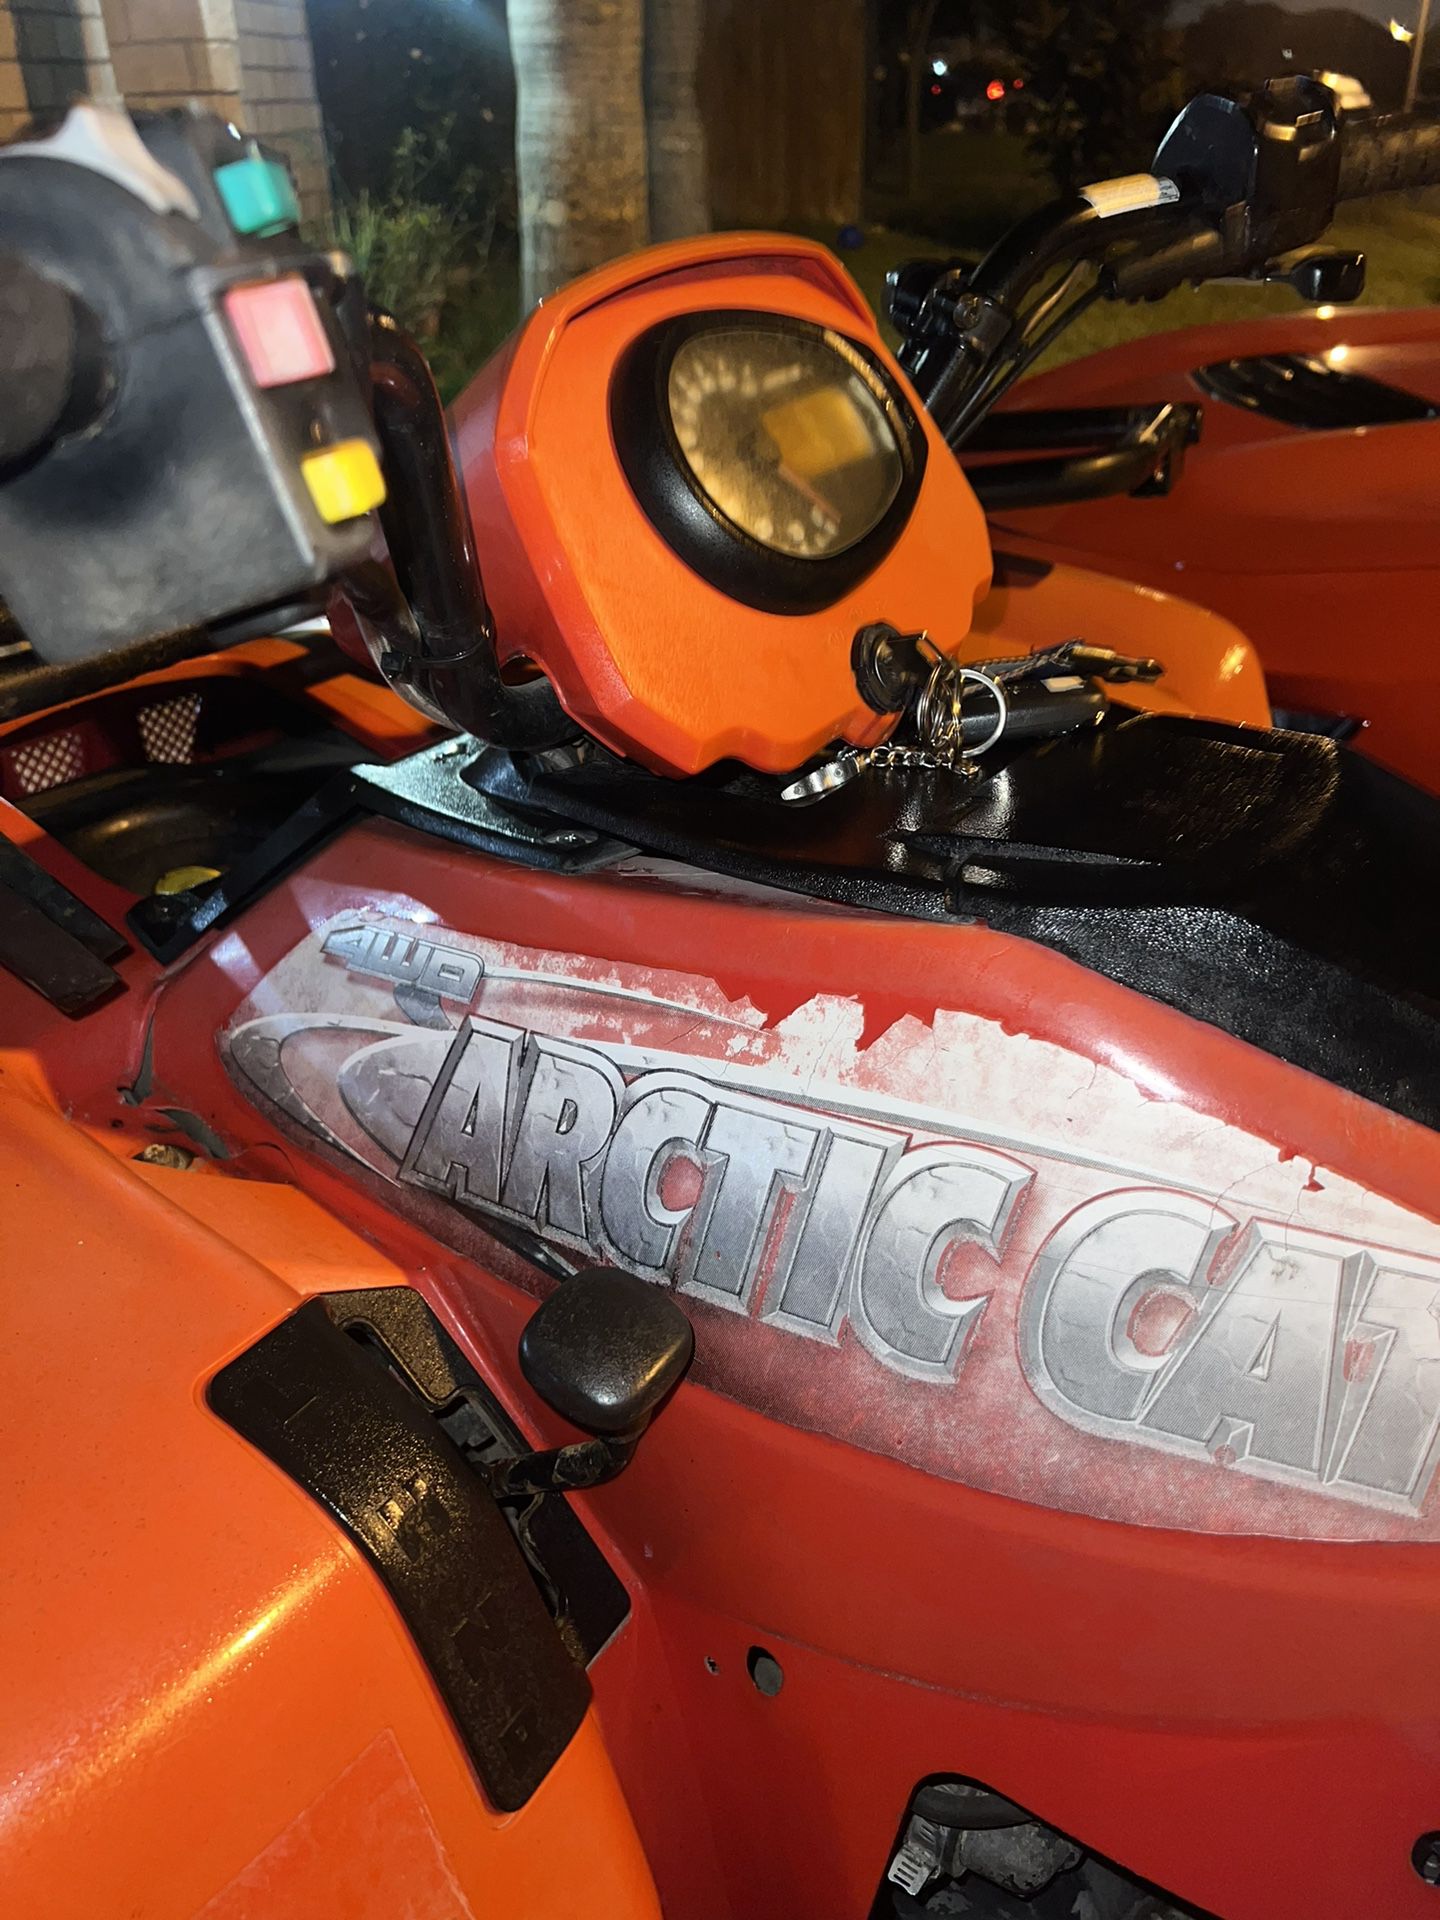 2009 Artic Cat 500cc 4x4 💯 